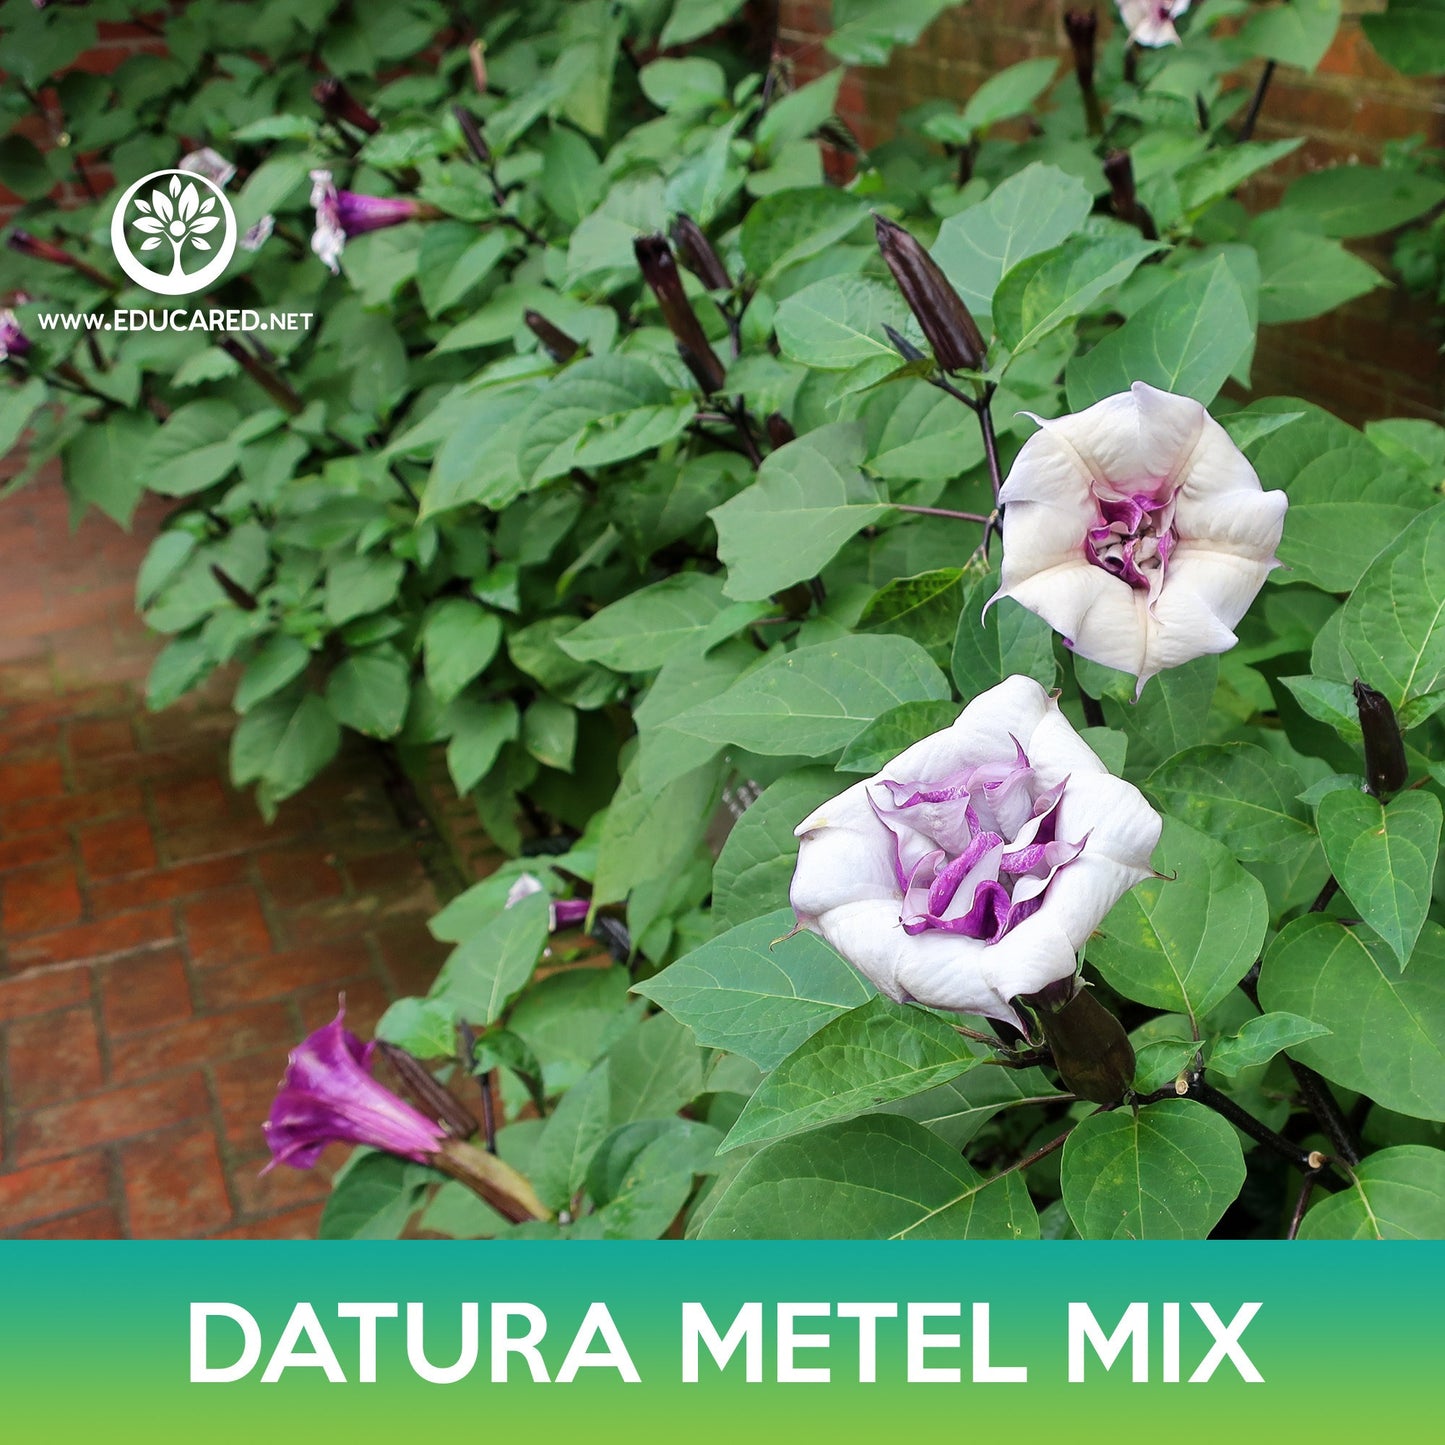 Datura Metel Mix Seeds, Angel's Trumpet Mix, Datura Metel Ballerina